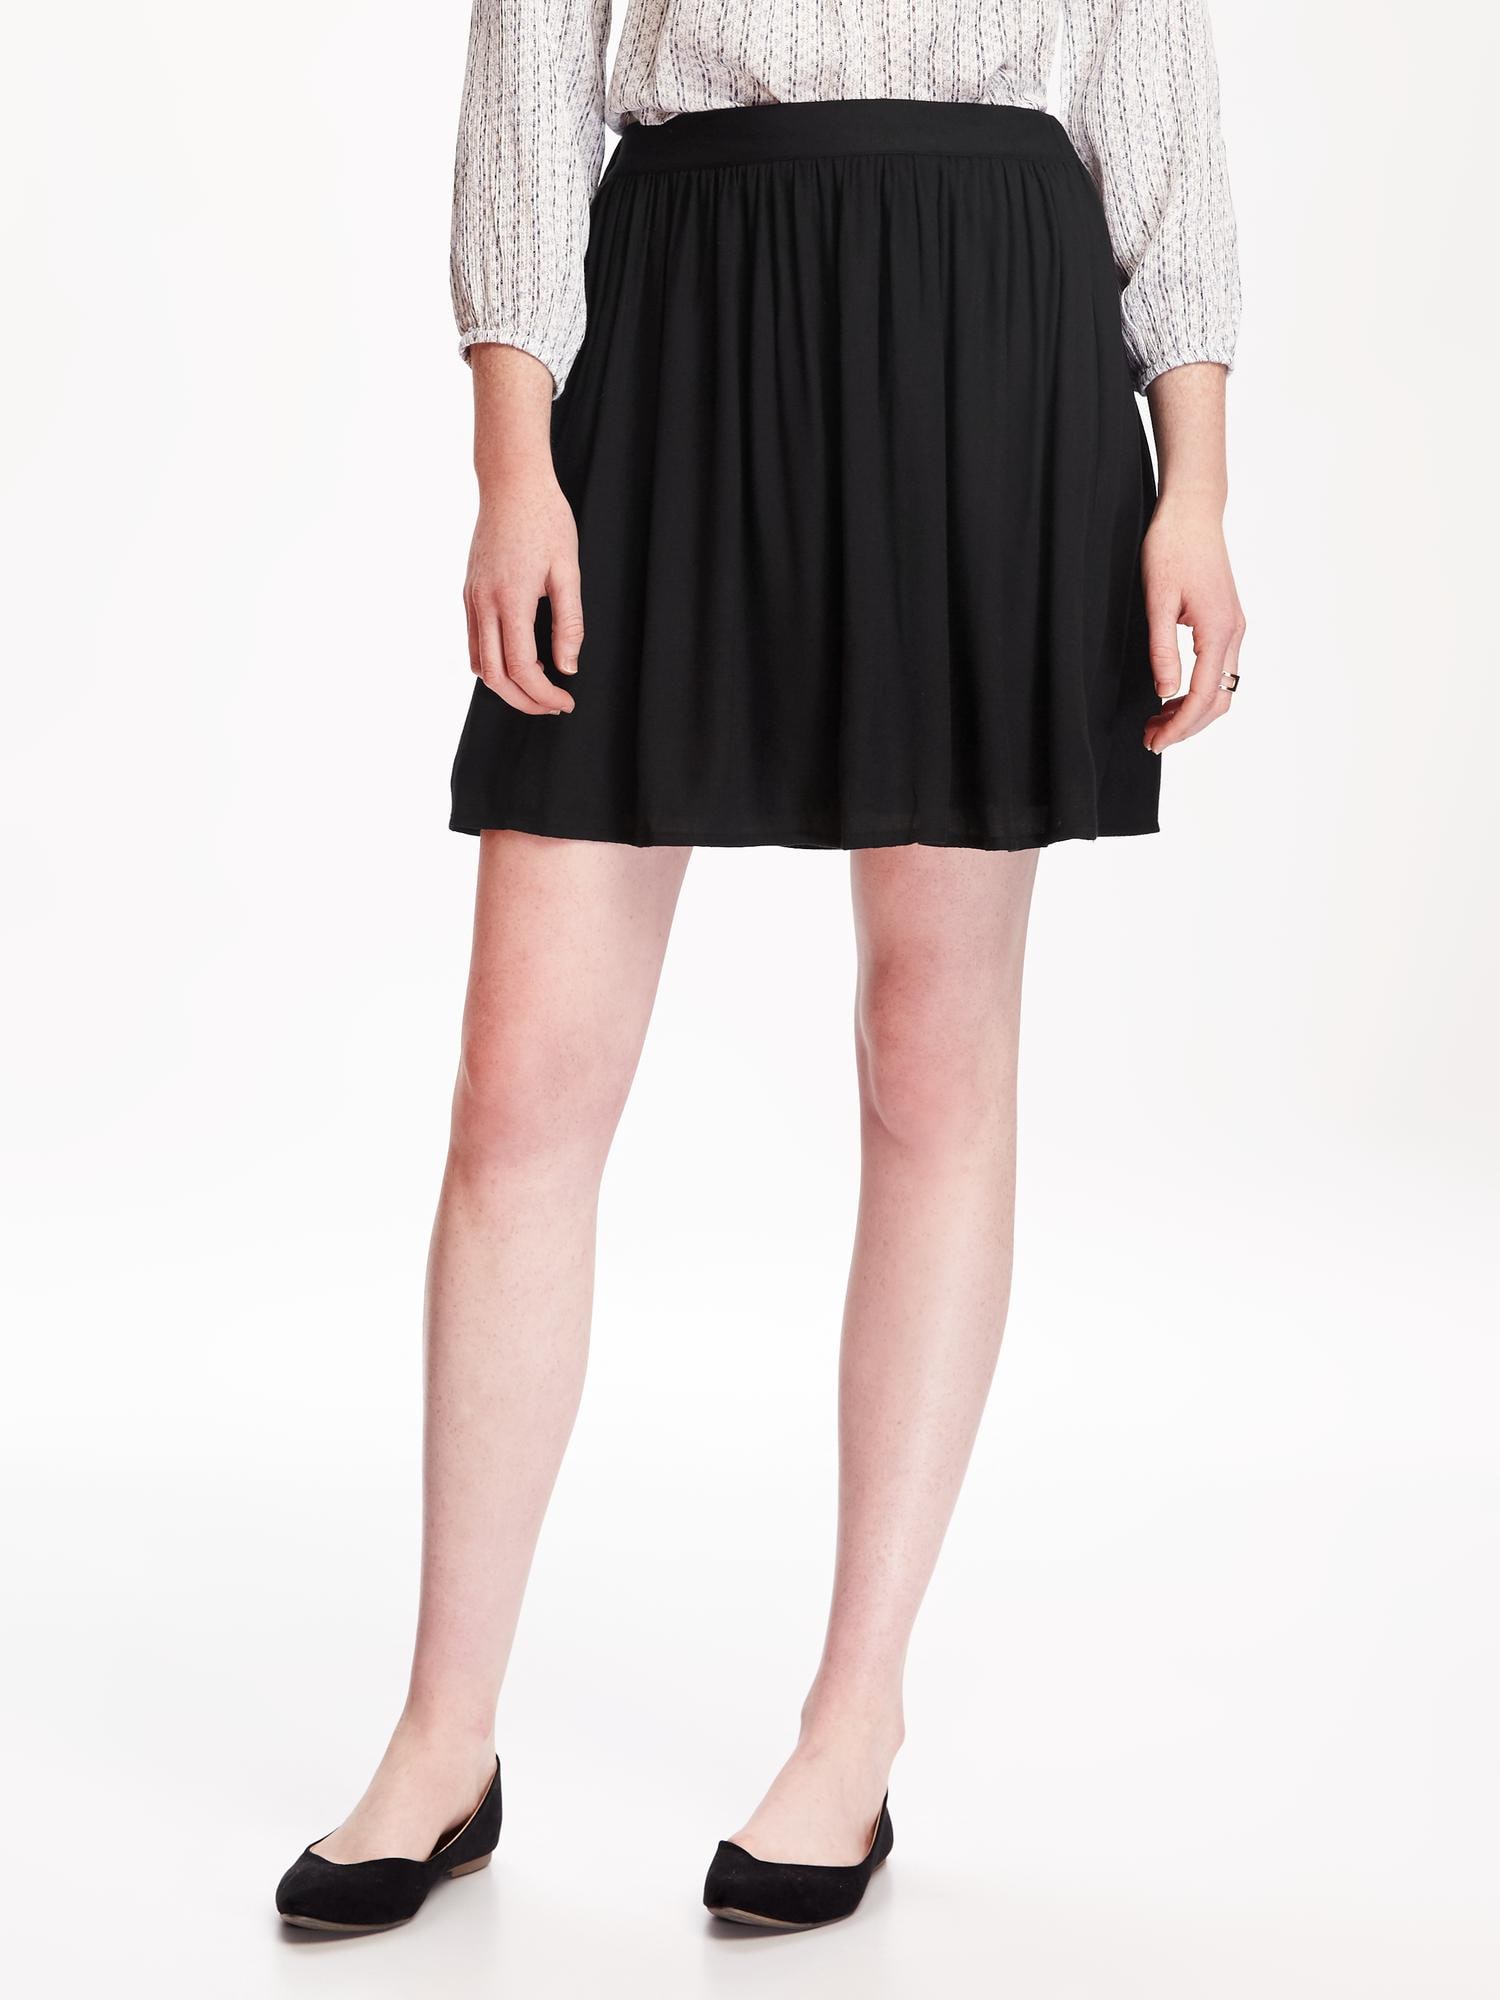 Oldnavy Fit & Flare Drapey Skirt for Women